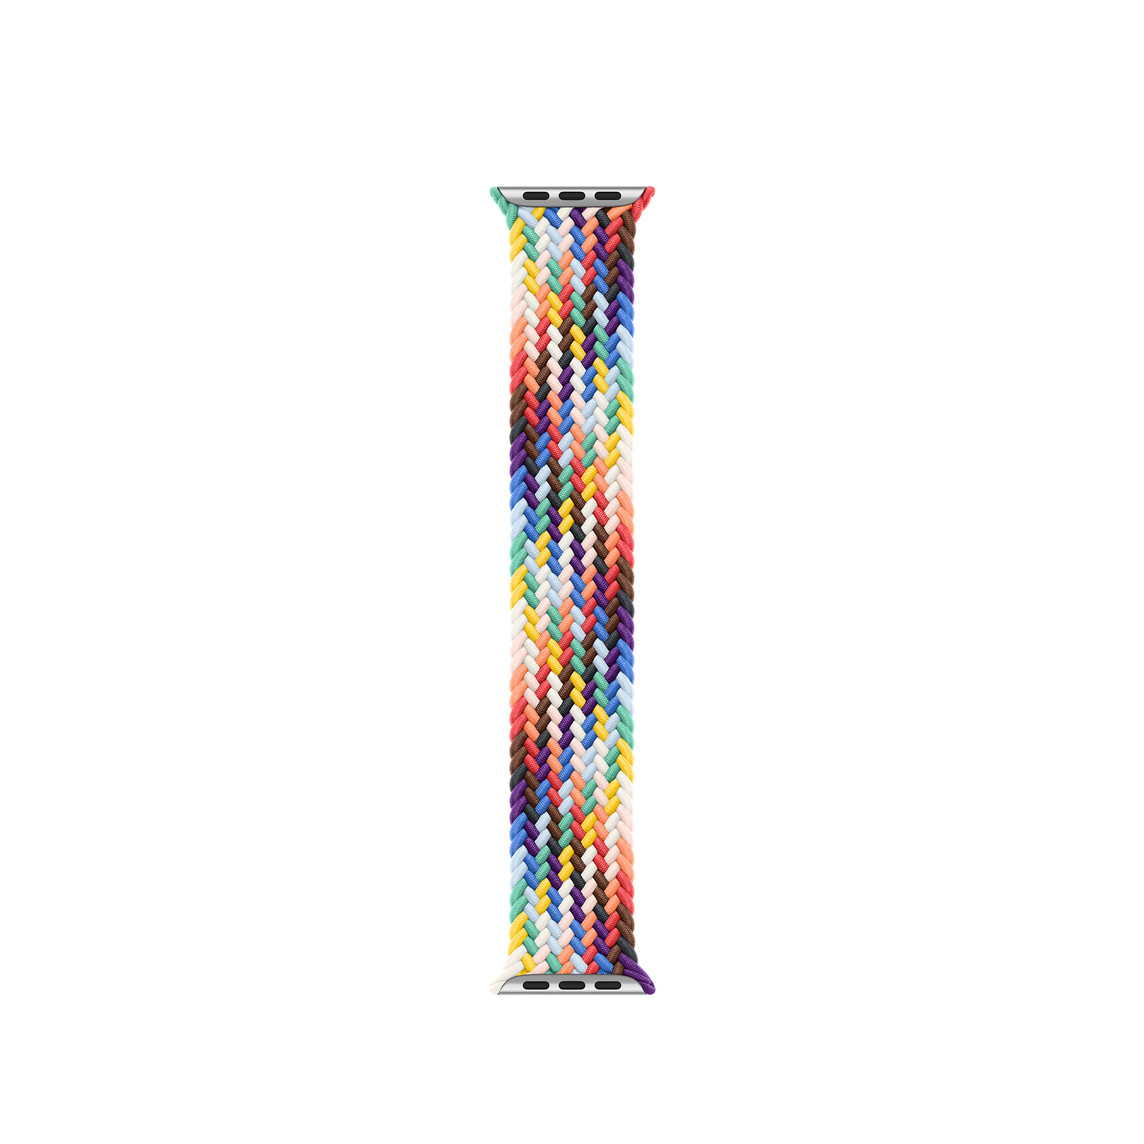 Flettet Solo Loop i Pride Edition (regnbuefarvet), vævet af polyester- og silikonetråde, helt uden lås eller spænde